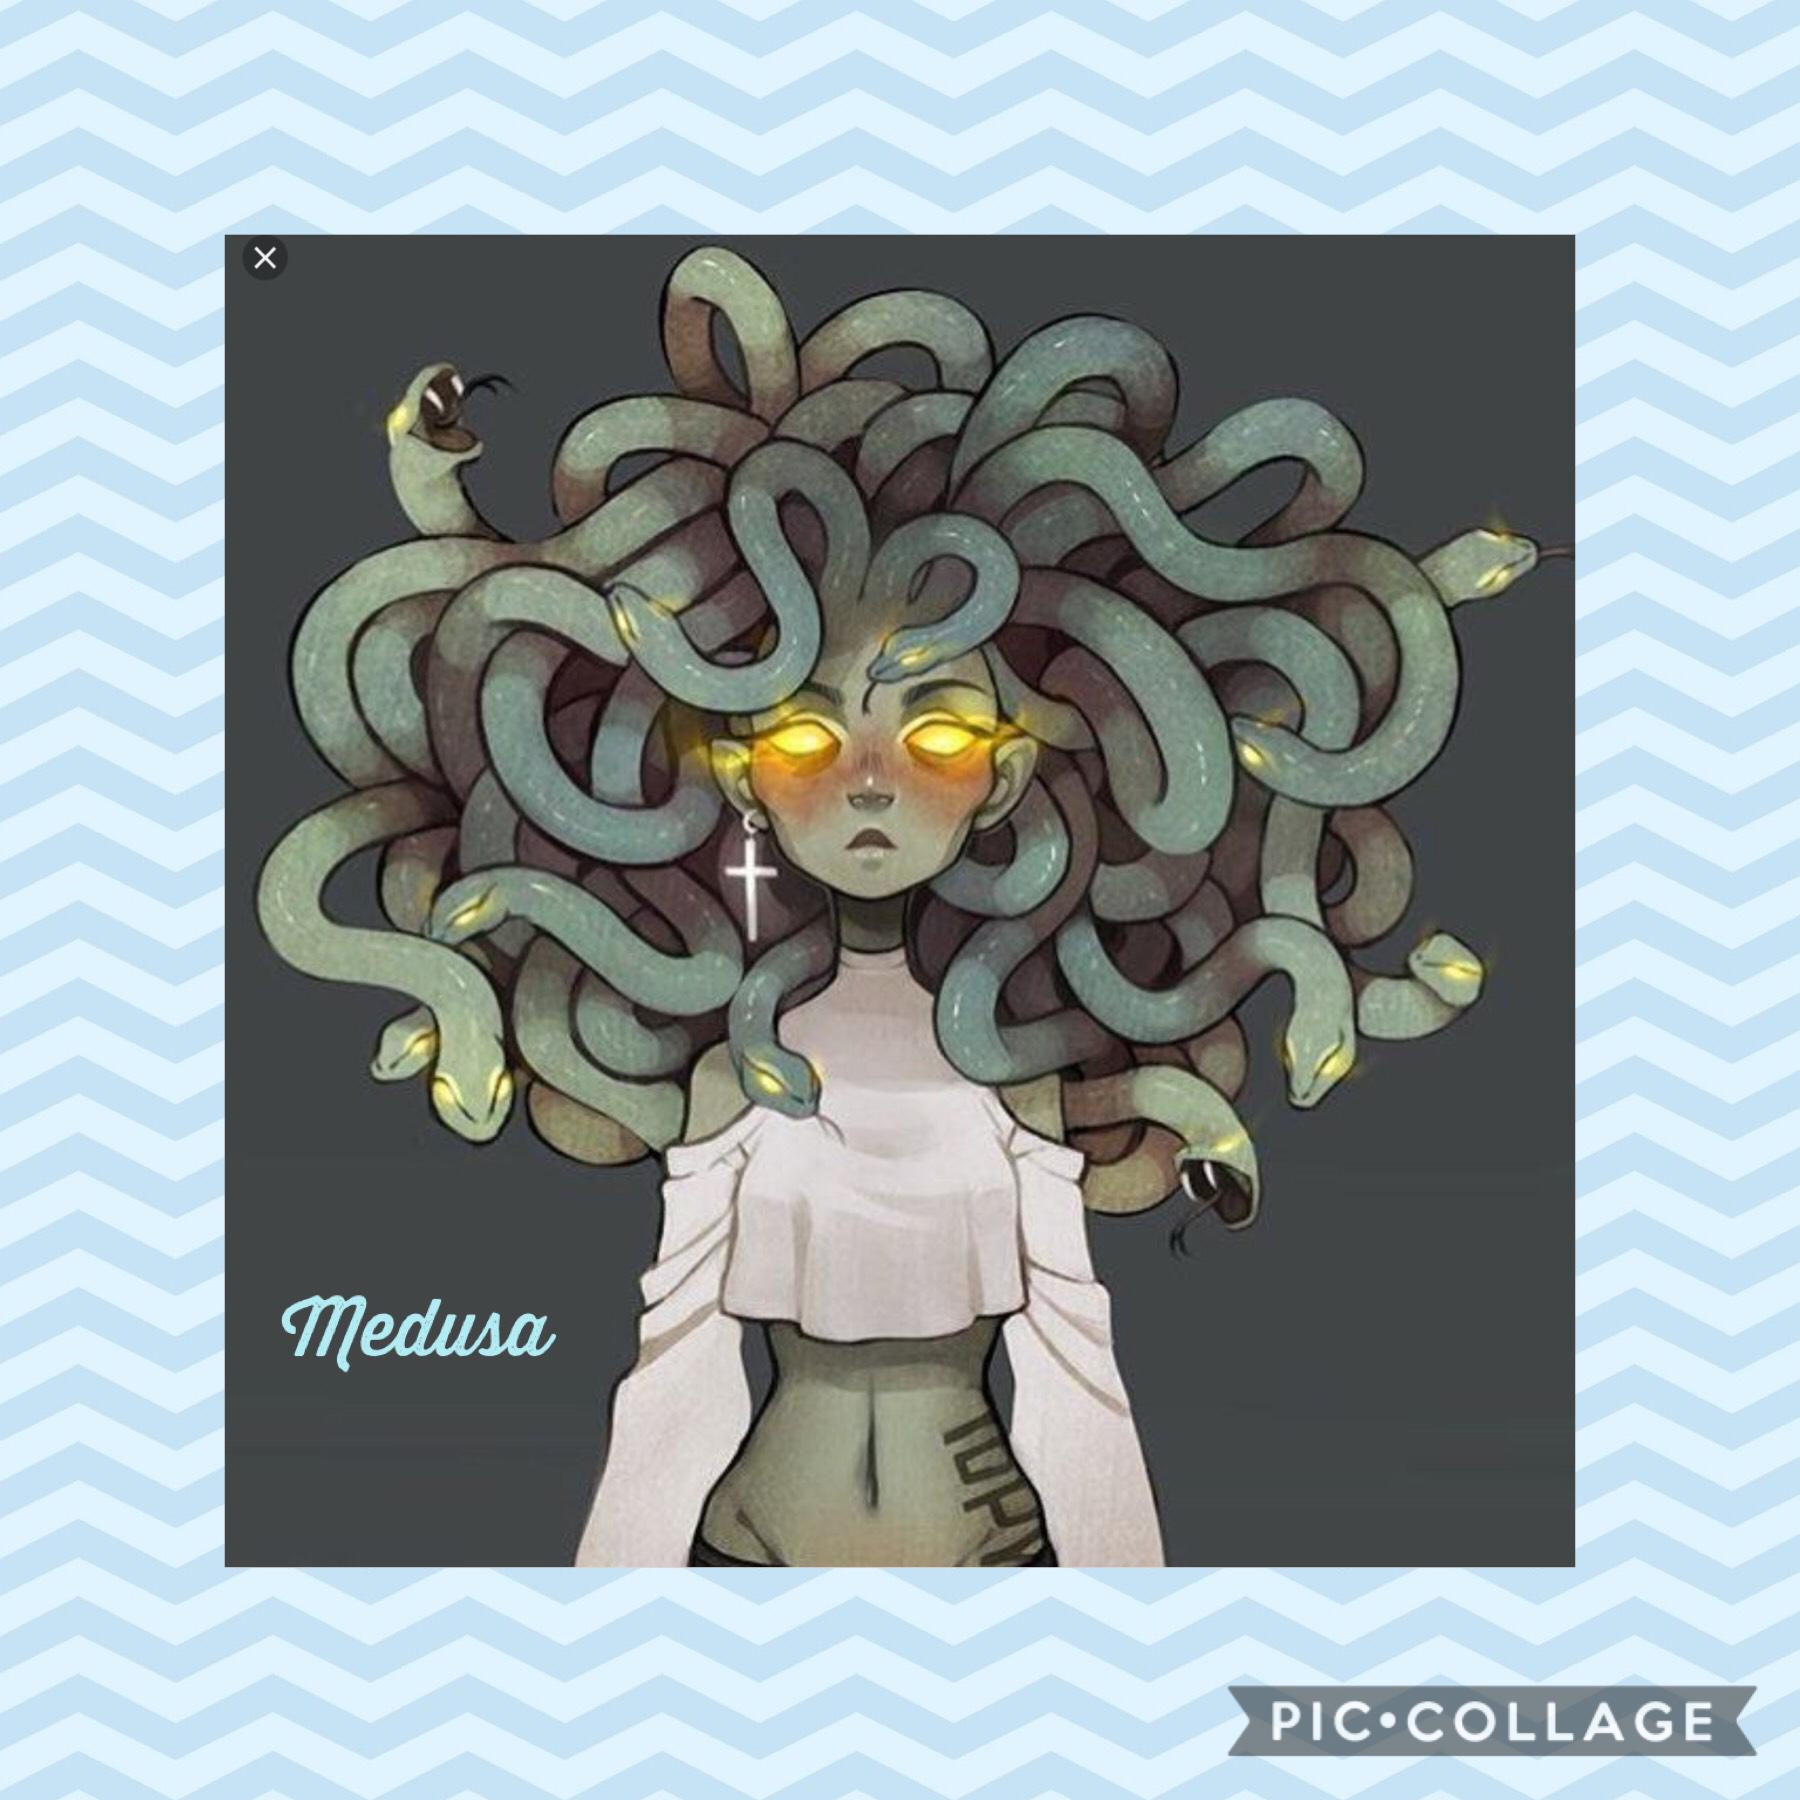 Medusa a snake queen 👑 